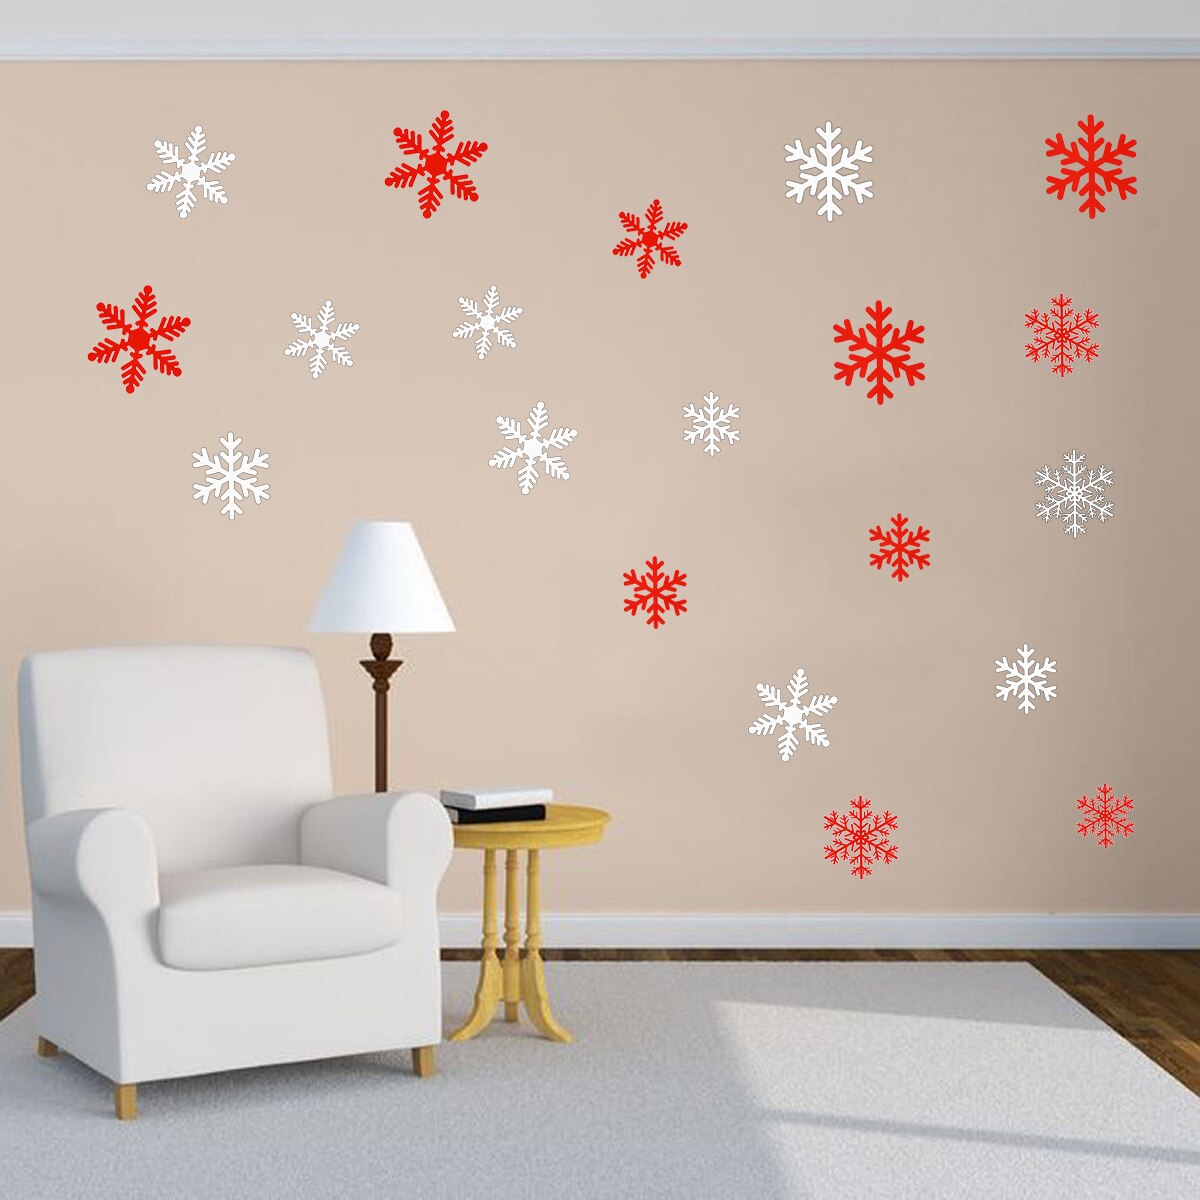 27 Stuks Sneeuwvlok Muursticker Raamstickers Kerst Behang Room Muurstickers Kerst Decoraties Voor Huis